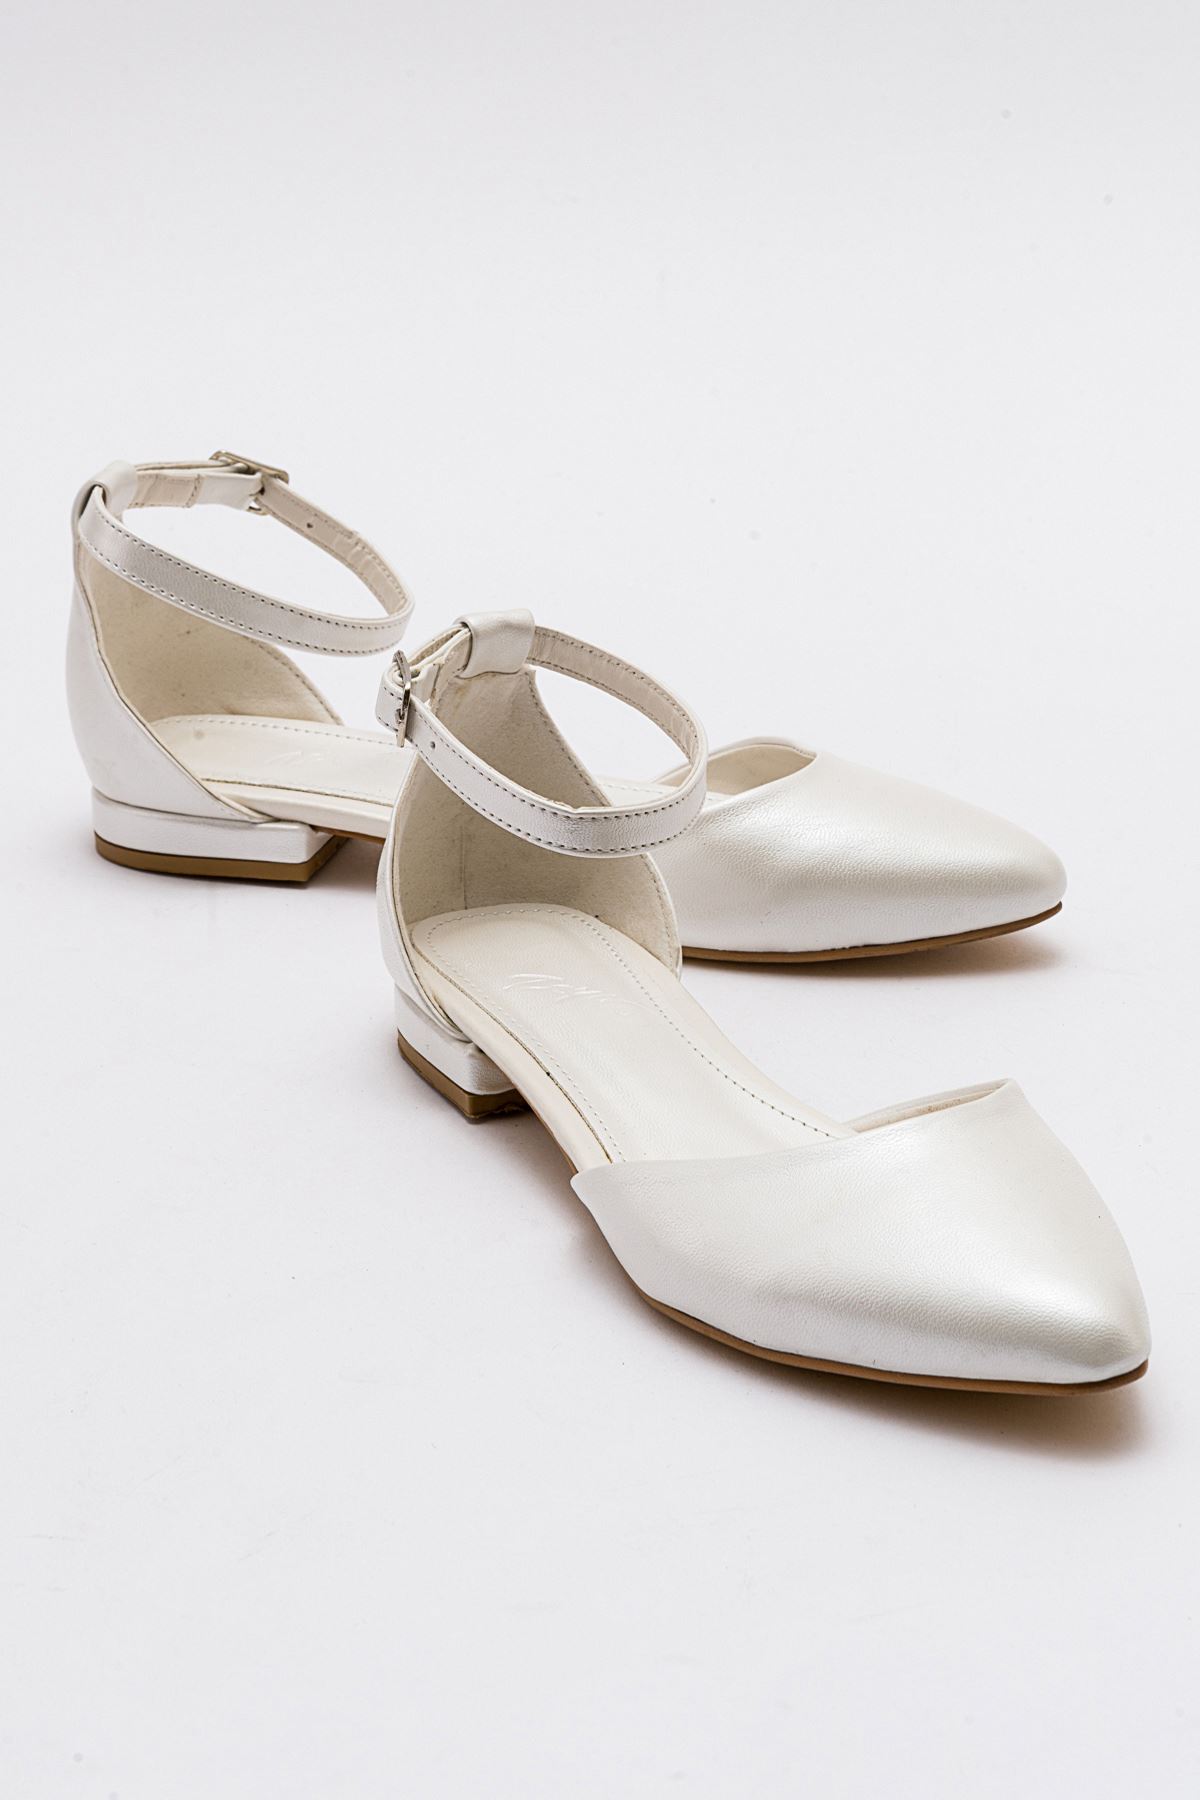 Alize Kadın Ayakkabı Beyaz Sedef